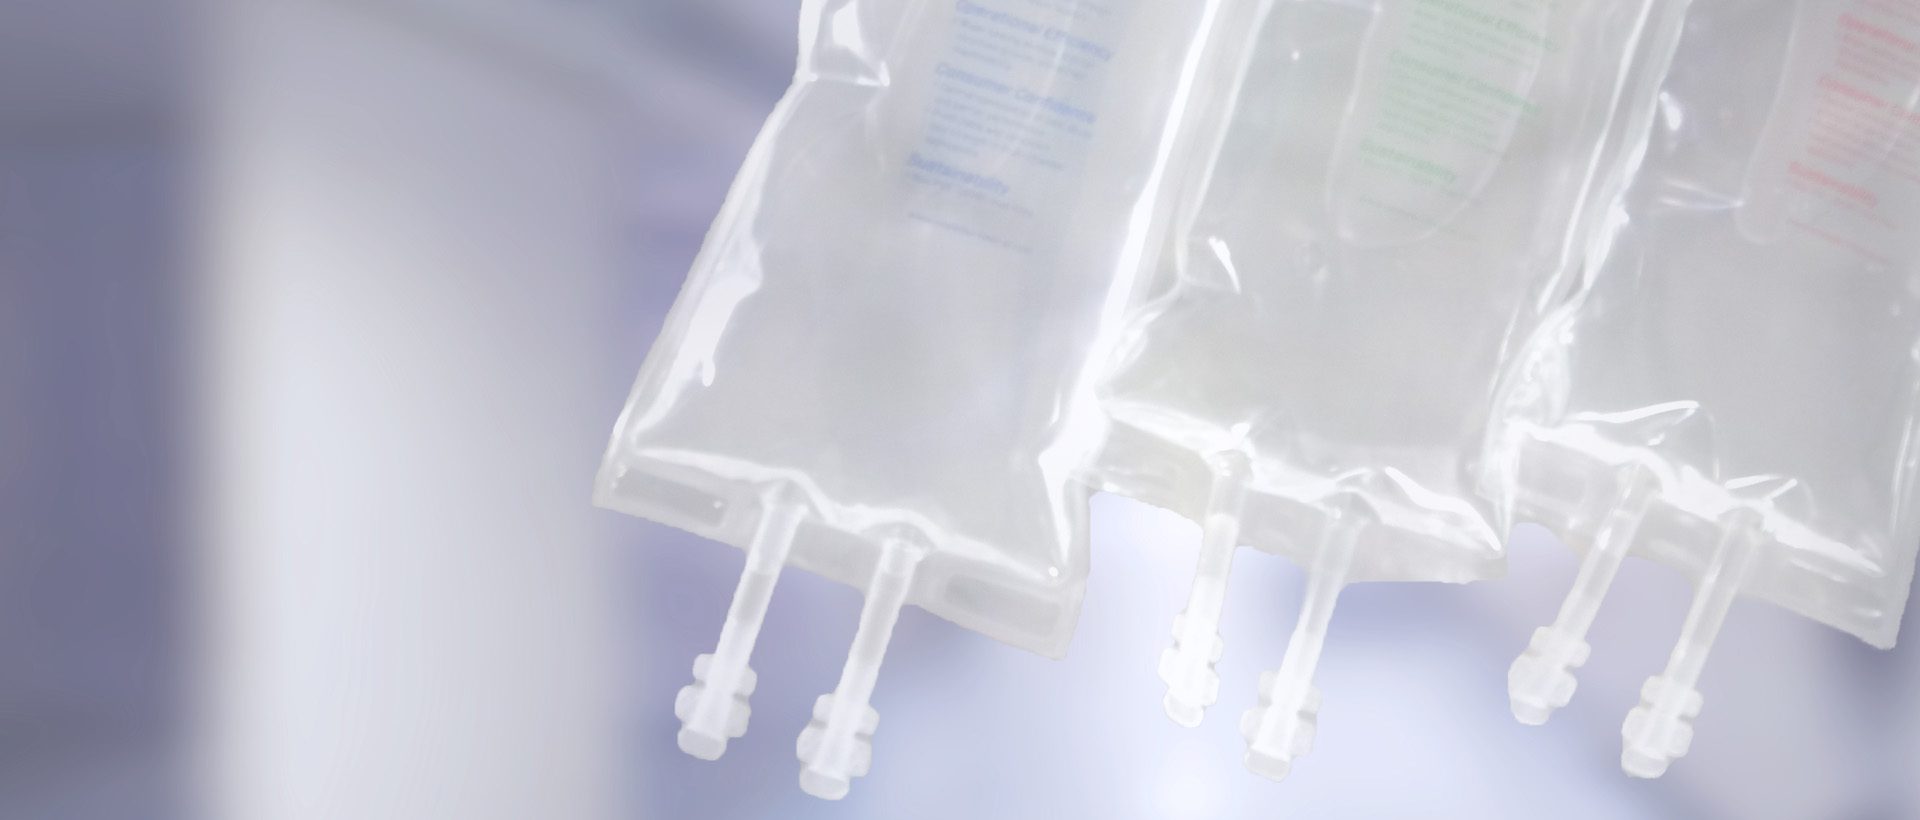 Bolsas de terapia intravenosa utilizadas en films médicos